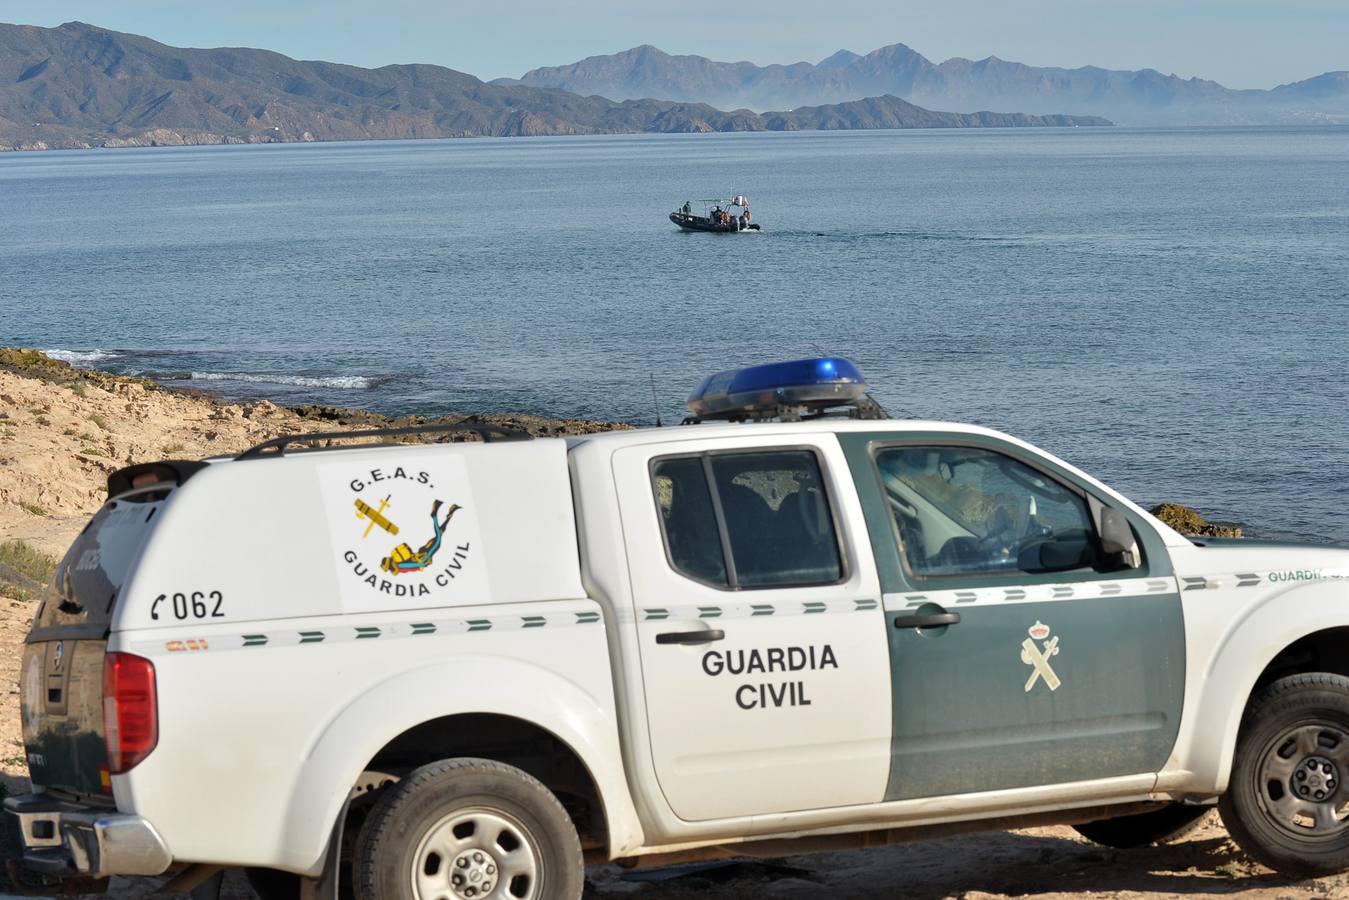 Las labores de búsqueda para tratar de dar con Antonio Martínez, el empresario lorquino que desapareció el pasado domingo en Cabo Cope, continúan